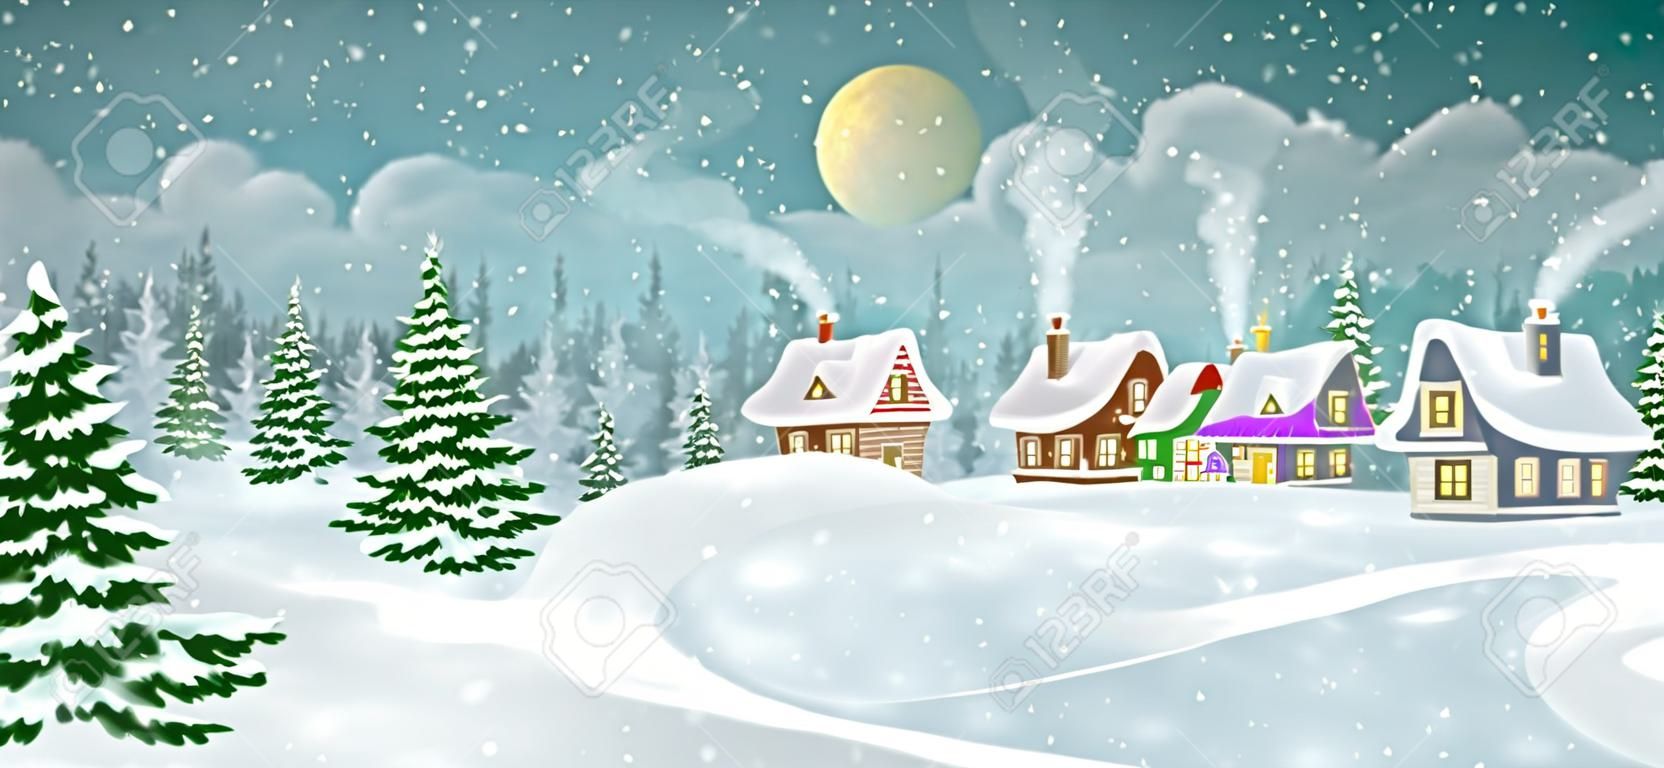 冬天與松樹林的村莊風景。小的童話般的房子被雪覆蓋著。